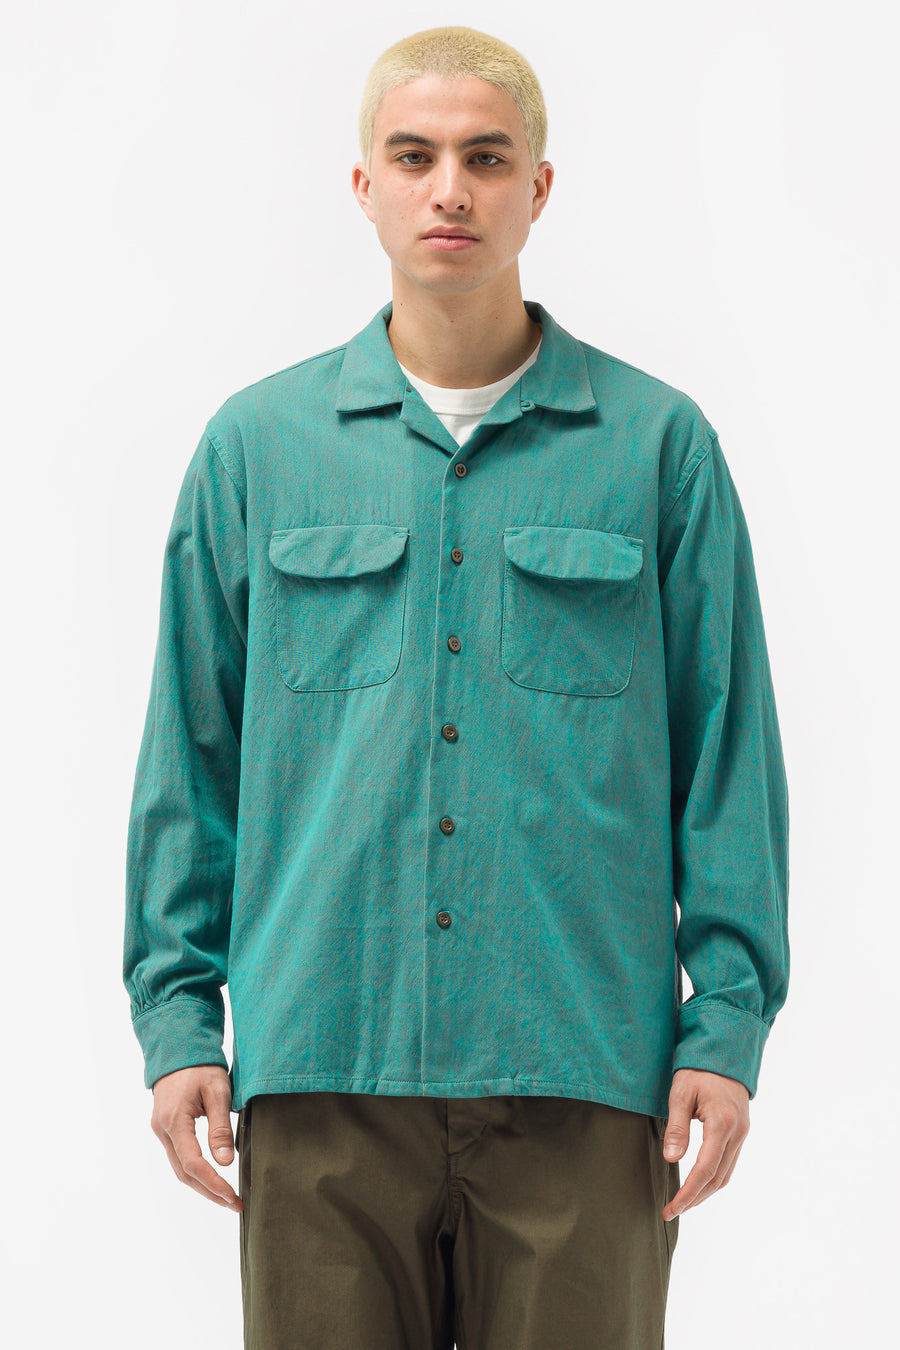 Engineered Garments - Classic Shirt in Jade Iridescent